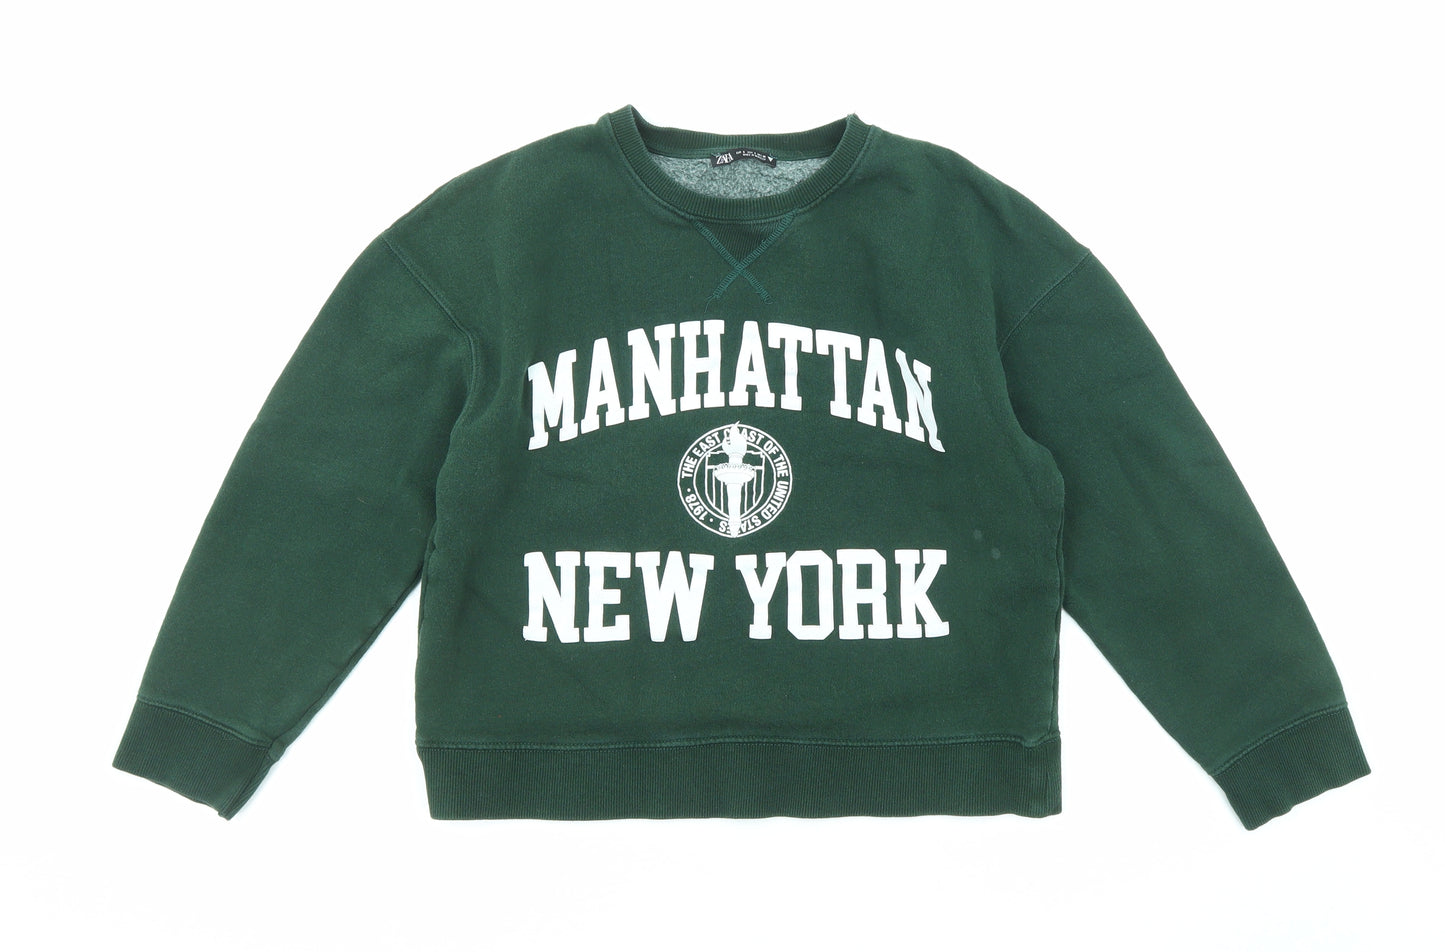 Zara Womens Green Cotton Pullover Sweatshirt Size S Pullover - Manhattan New York